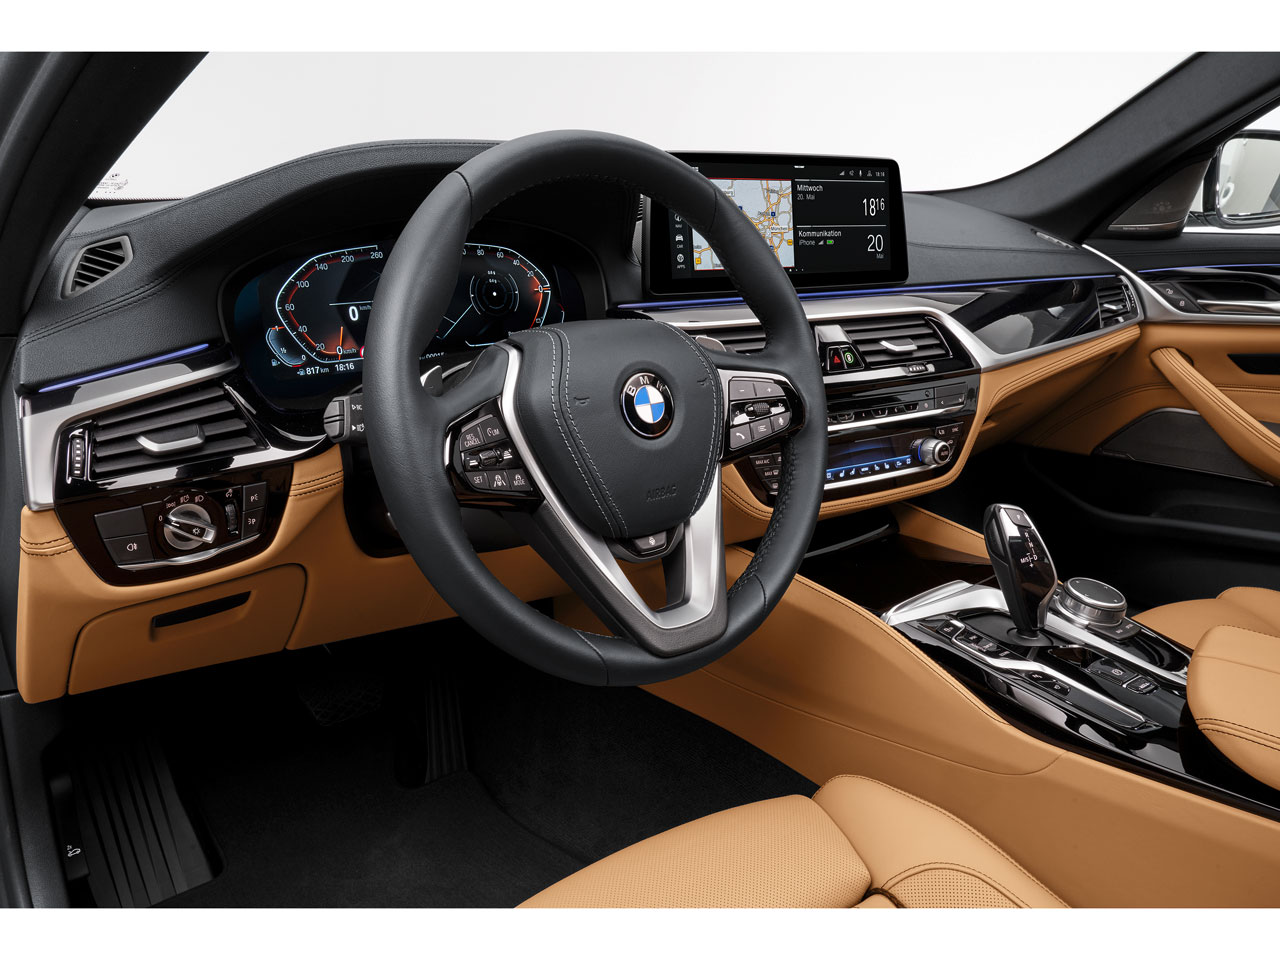 BMW 5シリーズ G30 (セダン) フロアマット ラゲッジマット (スタンダード) - 17